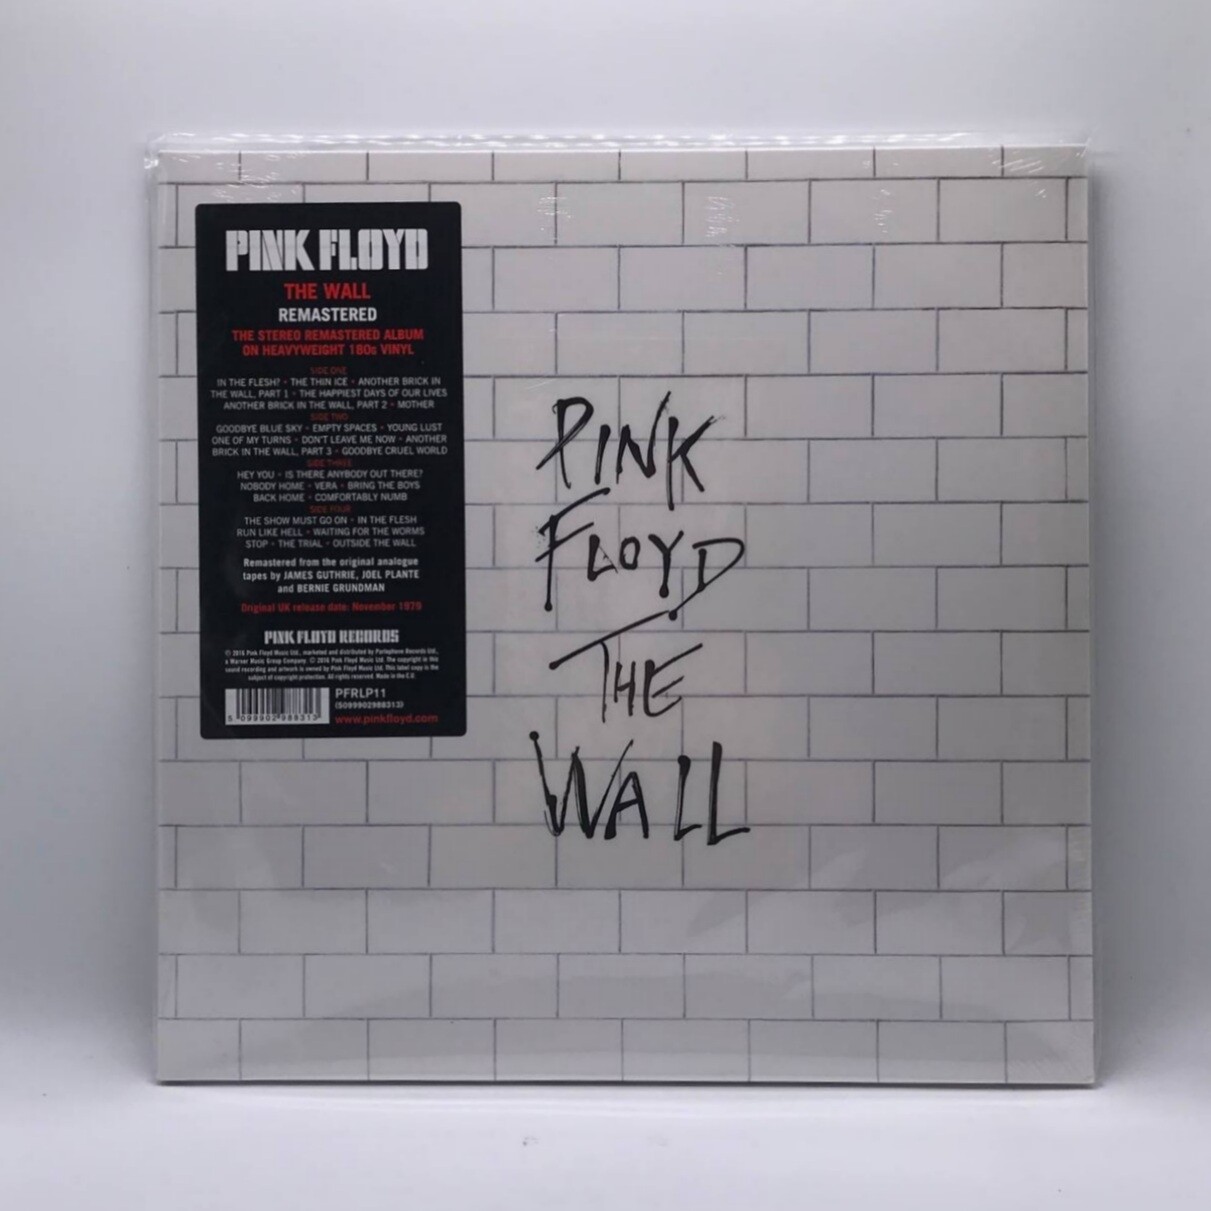 PINK FLOYD -THE WALL- 2XLP (180 GRAM VINYL)